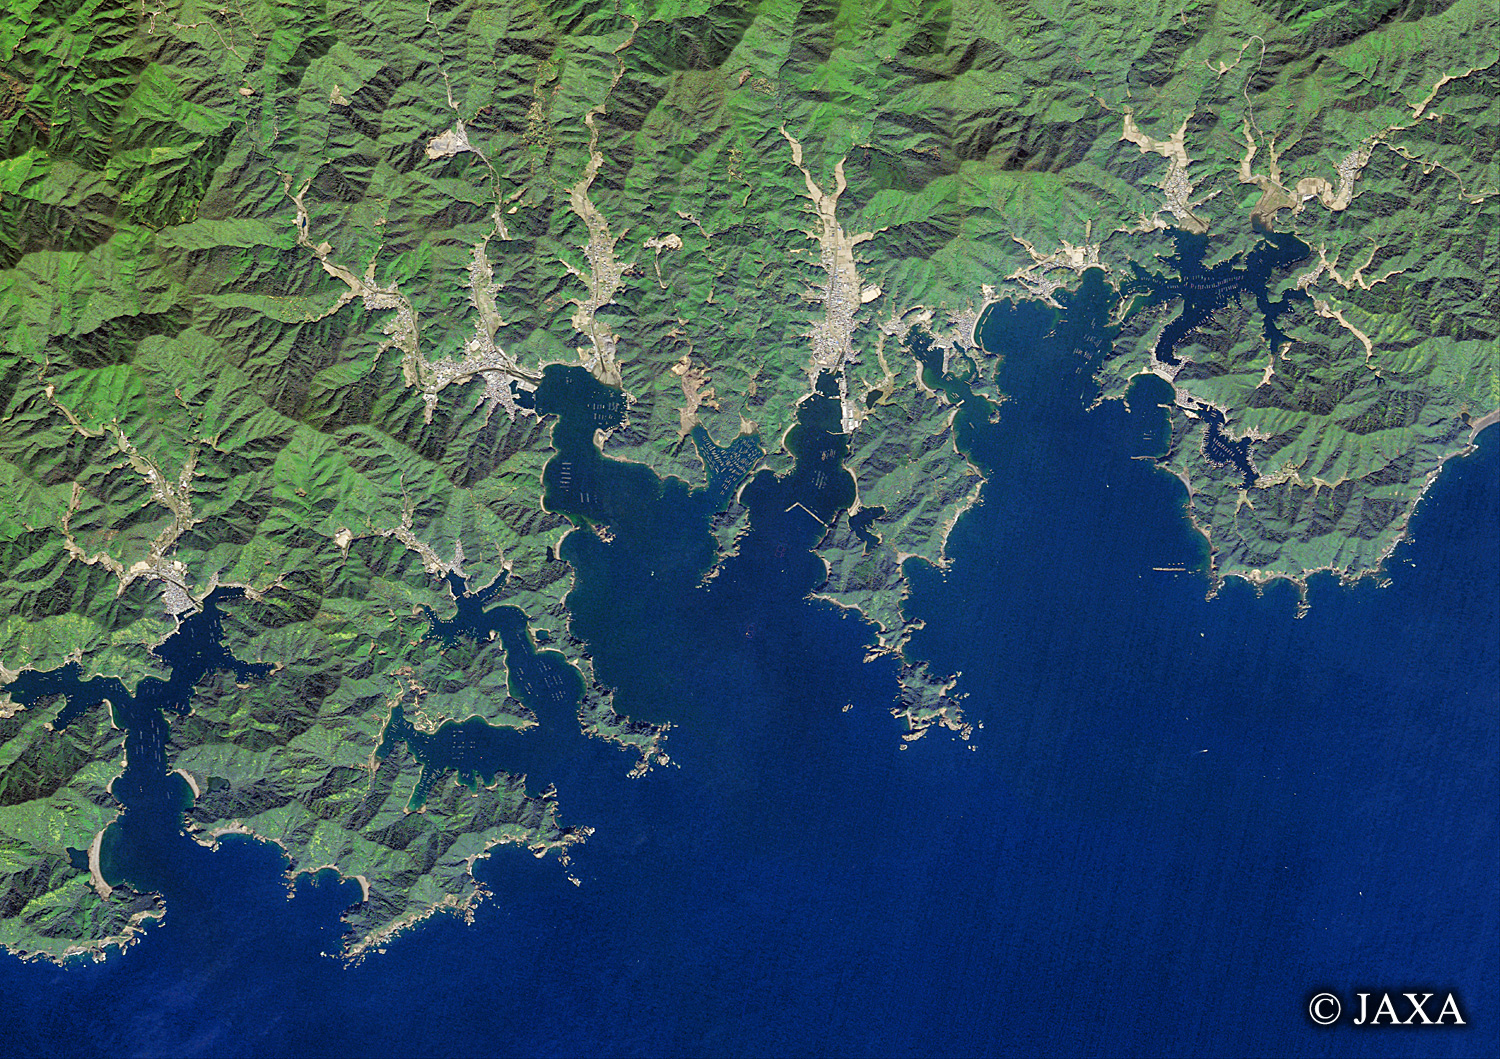 だいちから見た日本の都市 贄湾周辺:衛星画像